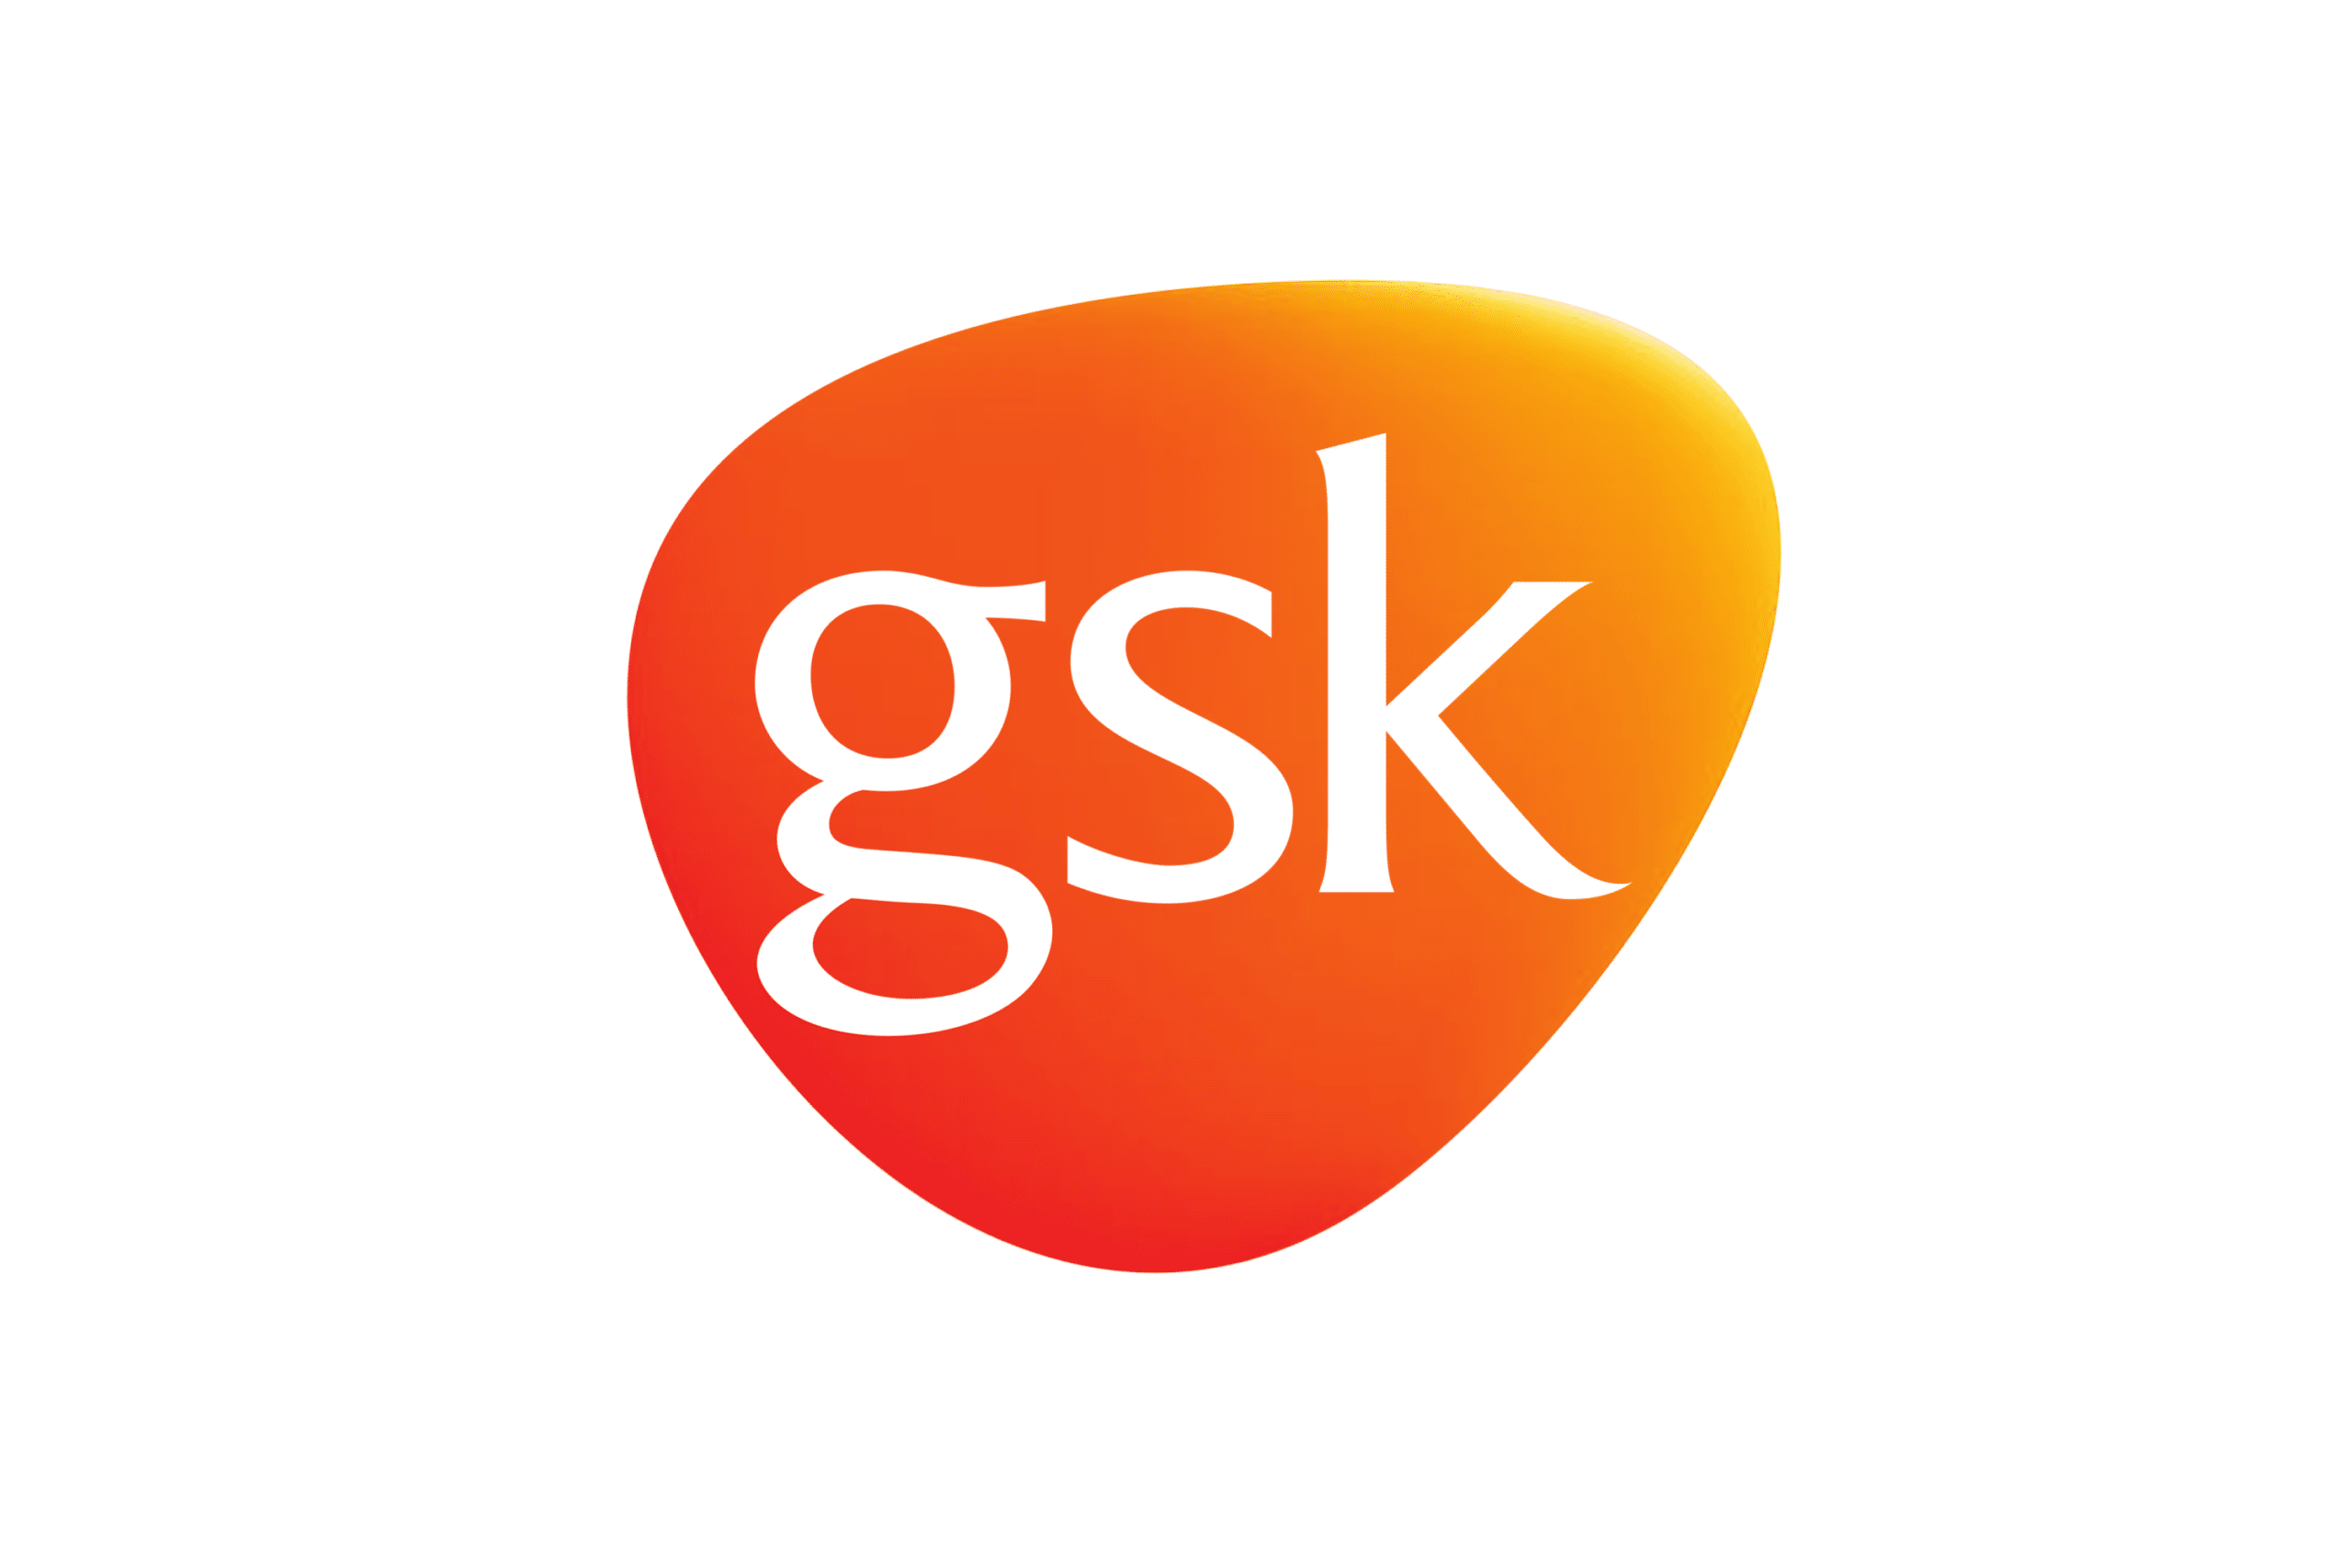 gsk-logo-3684901